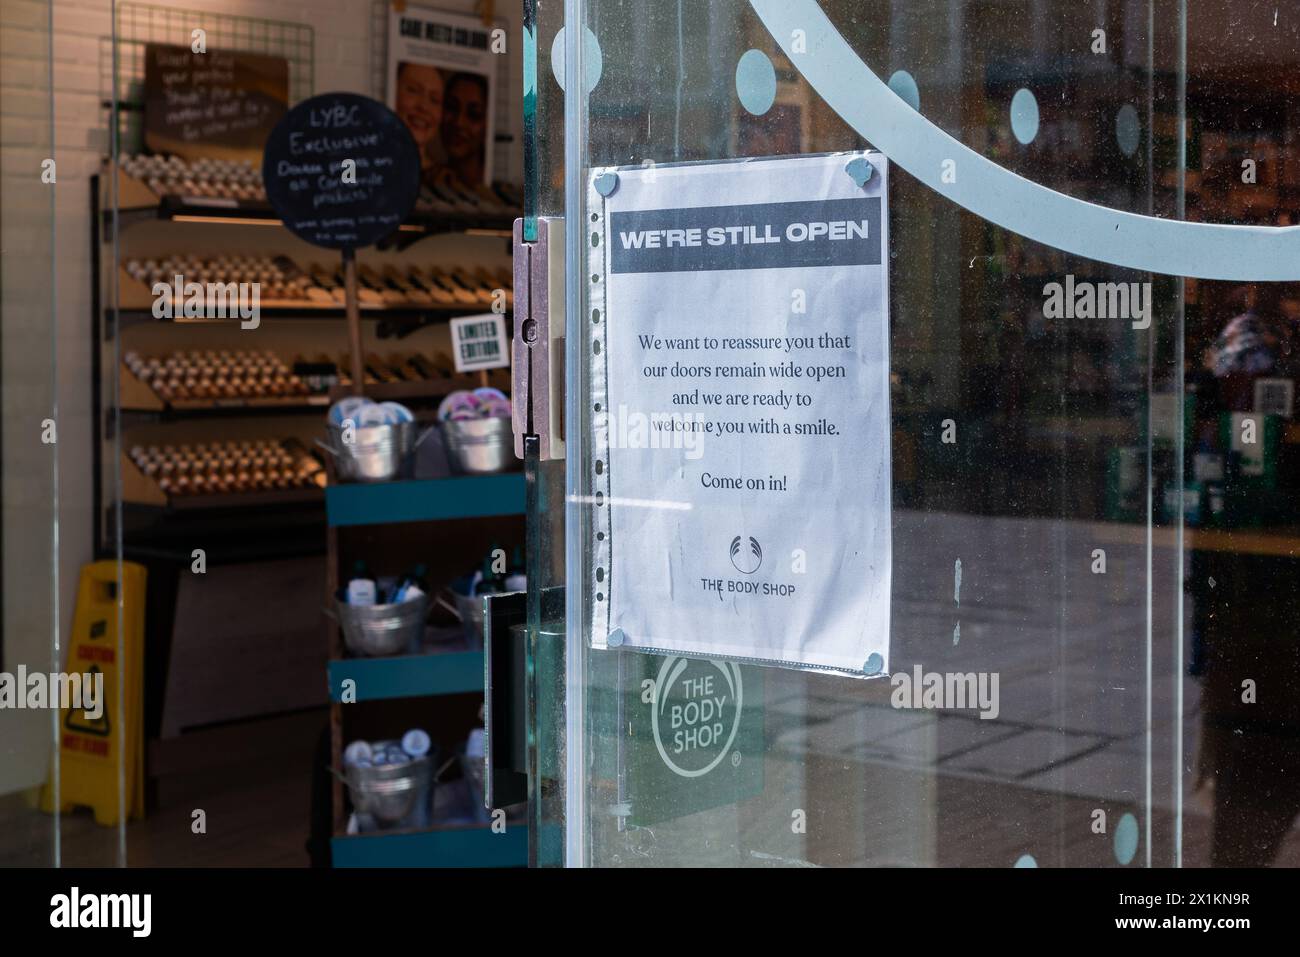 Avviso sulla finestra della filiale Body Shop che informa i clienti che sono ancora aperti nonostante il marchio sia in fase di amministrazione. Siamo ancora aperti Foto Stock